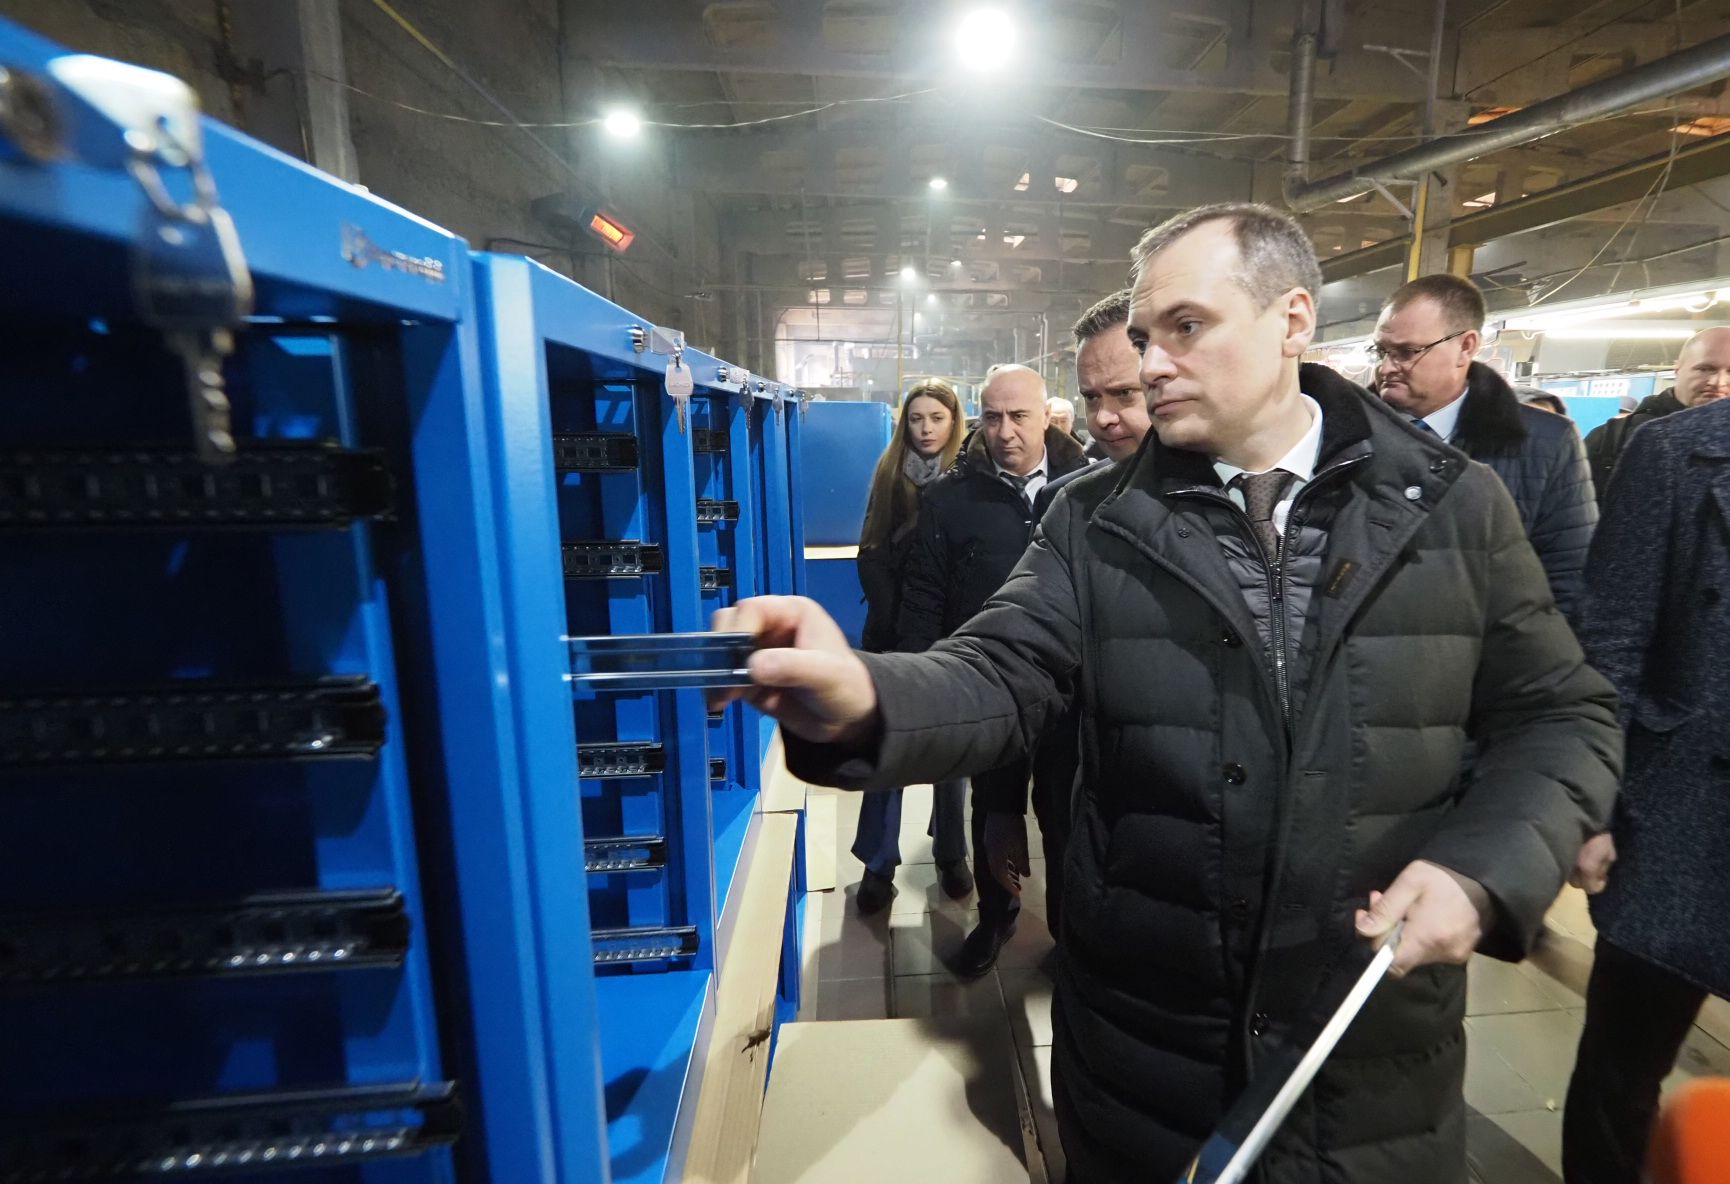 Глава Республики посетил производство компании Верстакофф в ходе рабочей поездки в Краснослободск.